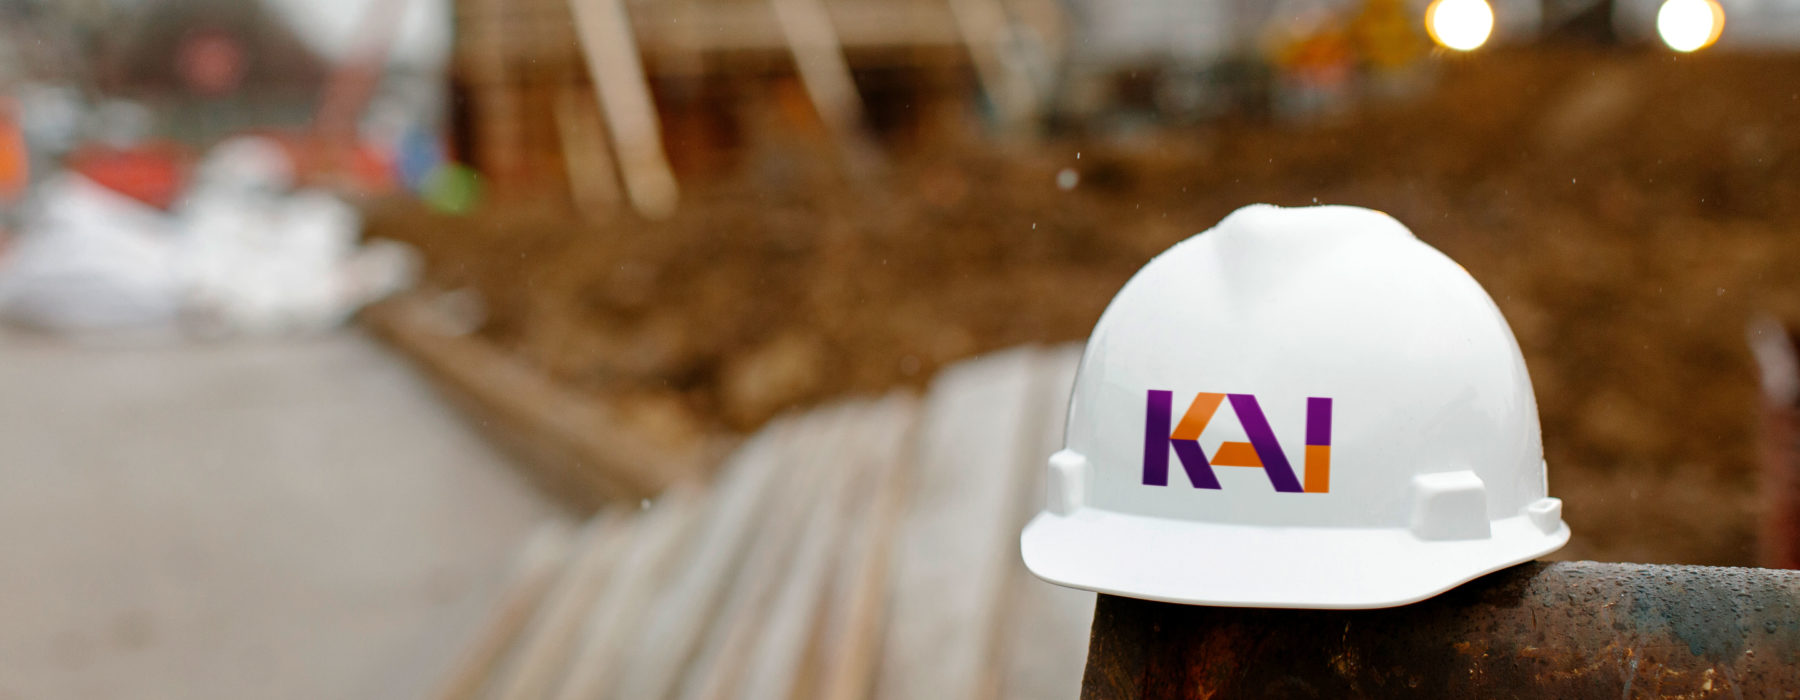 KAI Enterprises Construction Hat in front of a Construction Site